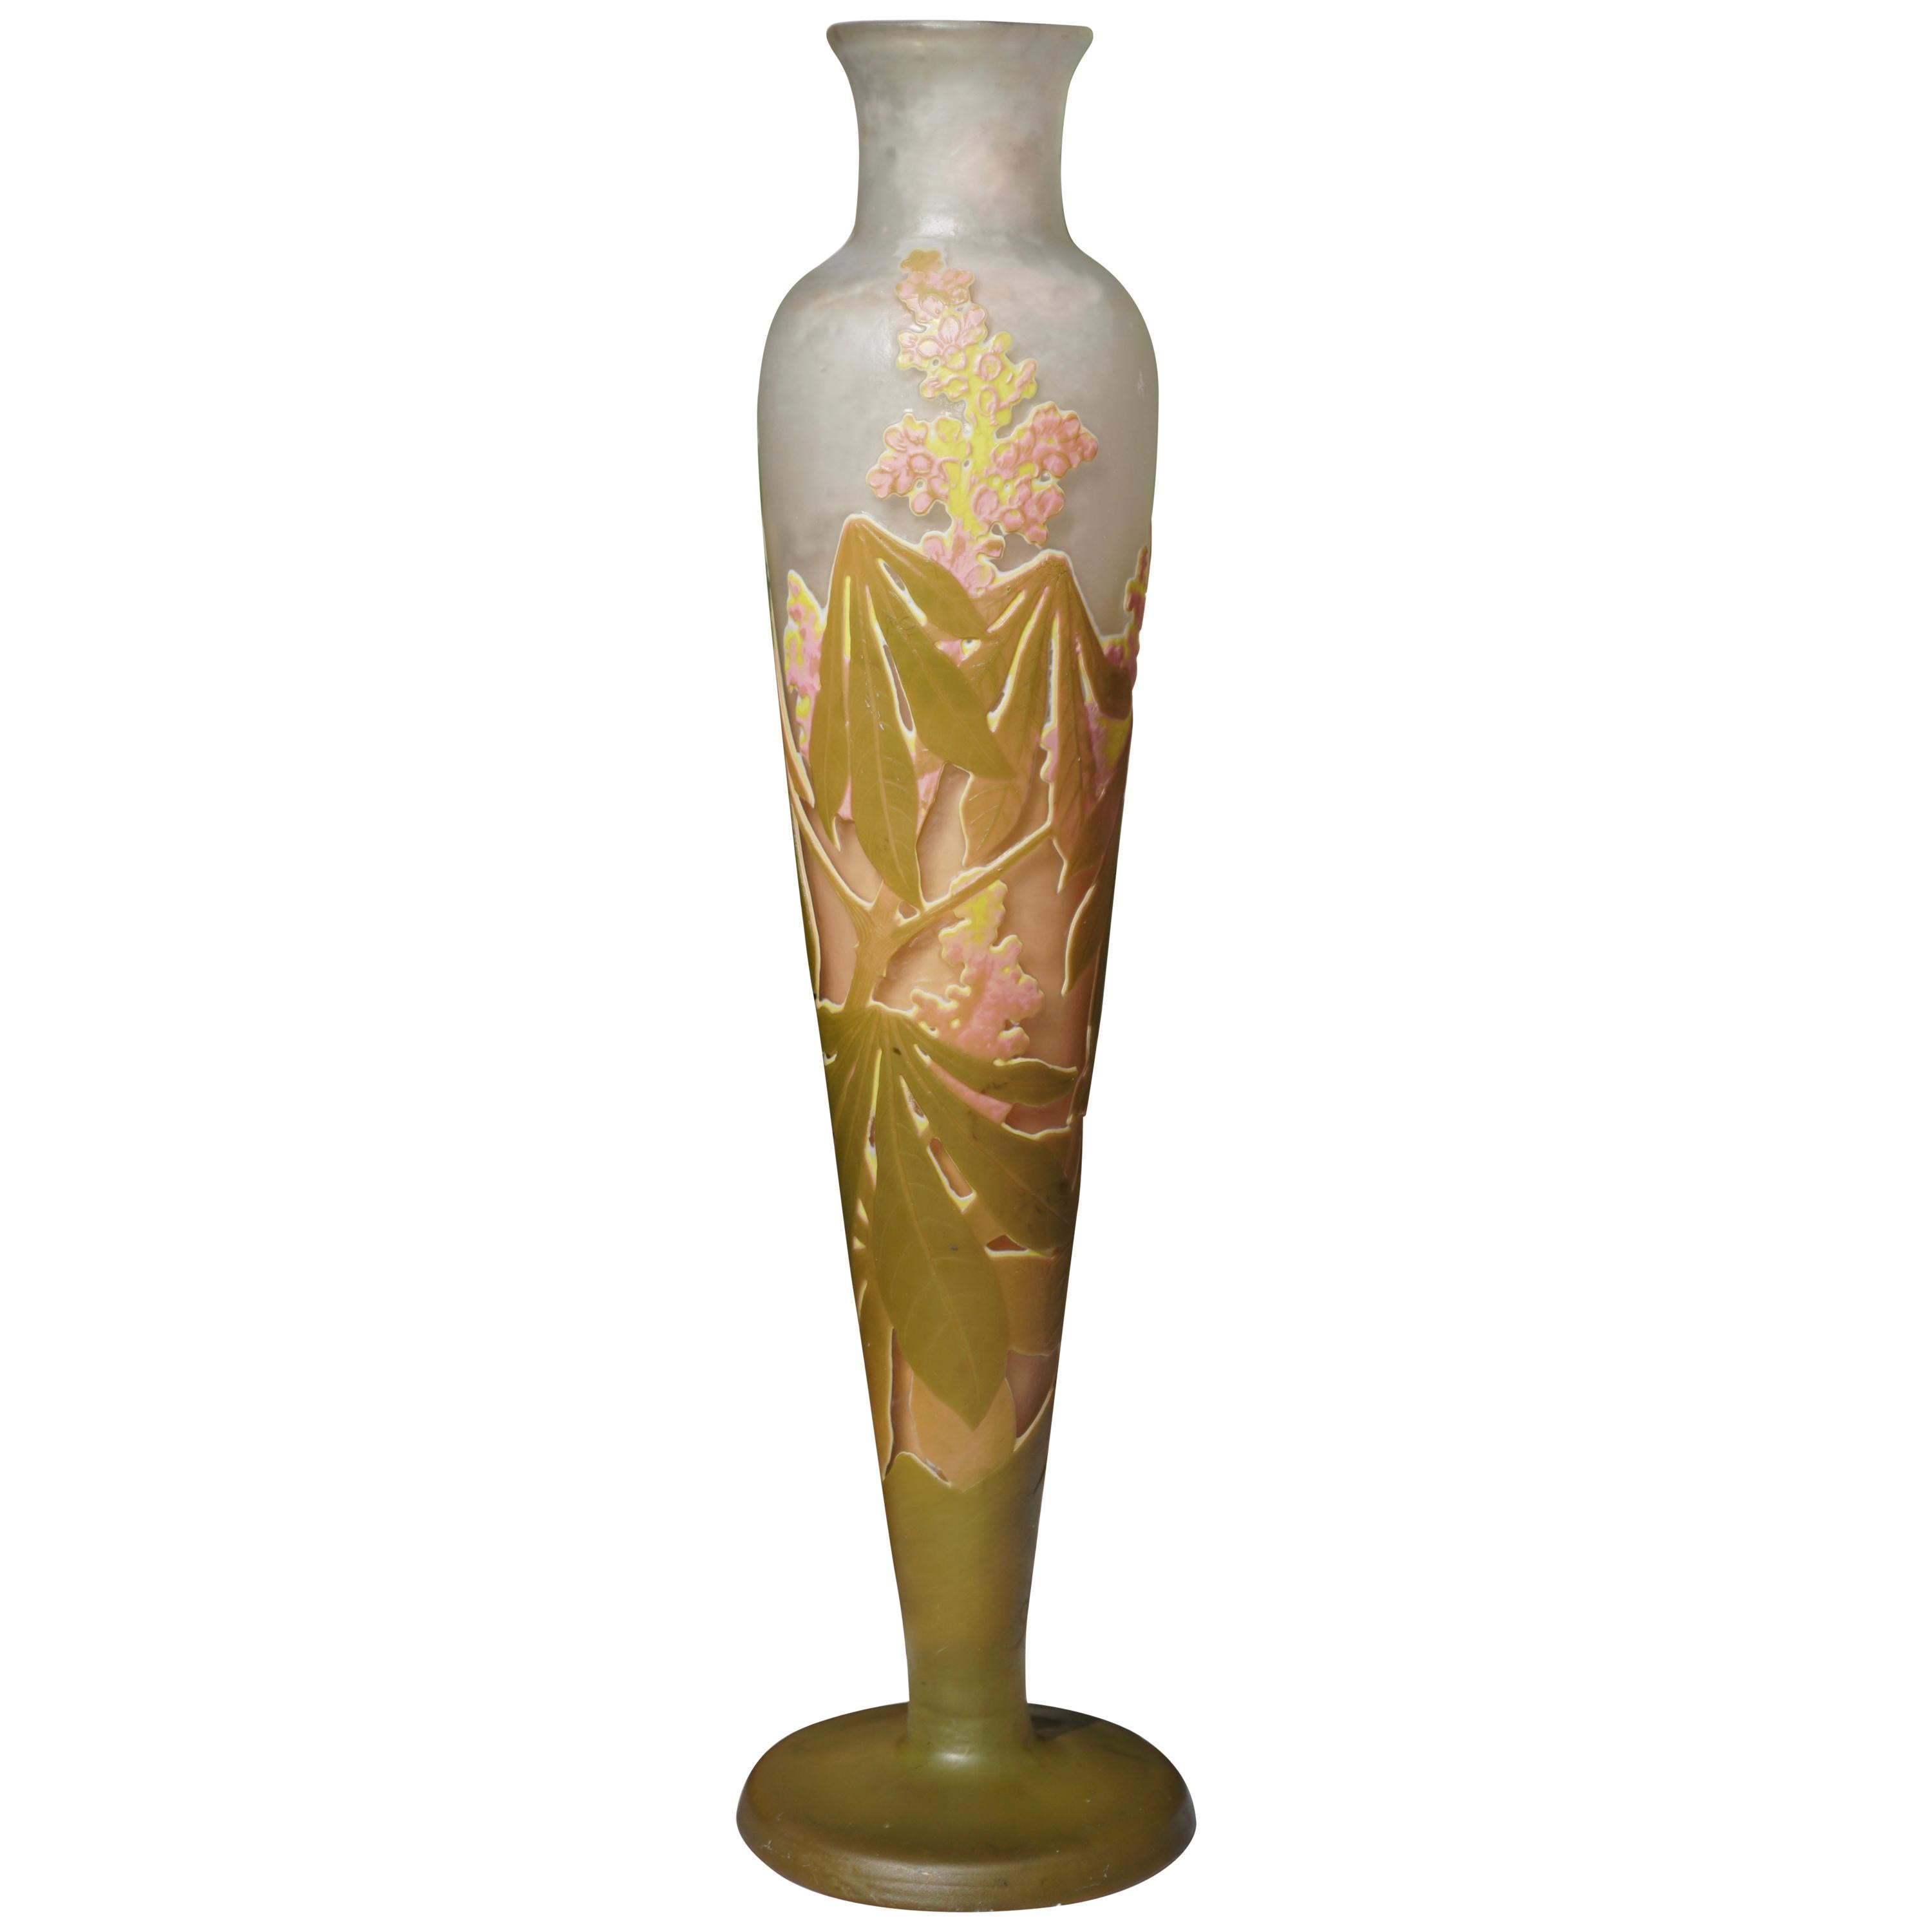 Große Kamee-Vase im Jugendstil von Emile Galle, 1904